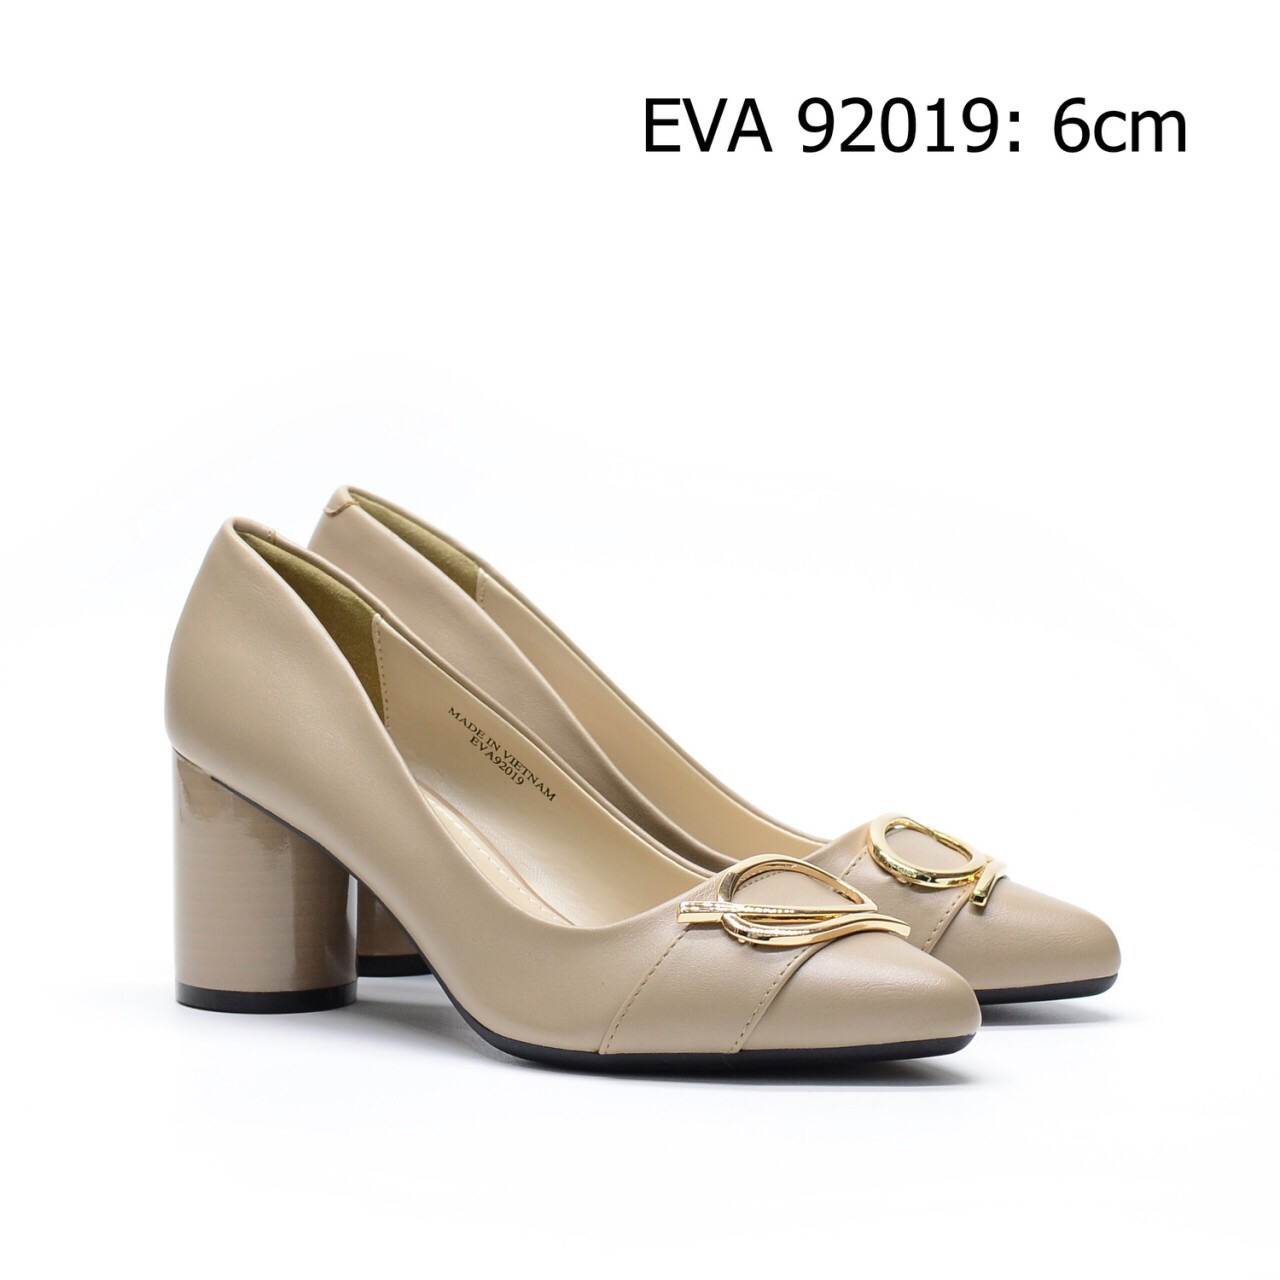 Giày gót vuông EVA92019 phối nơ kim loại nổi bật mới